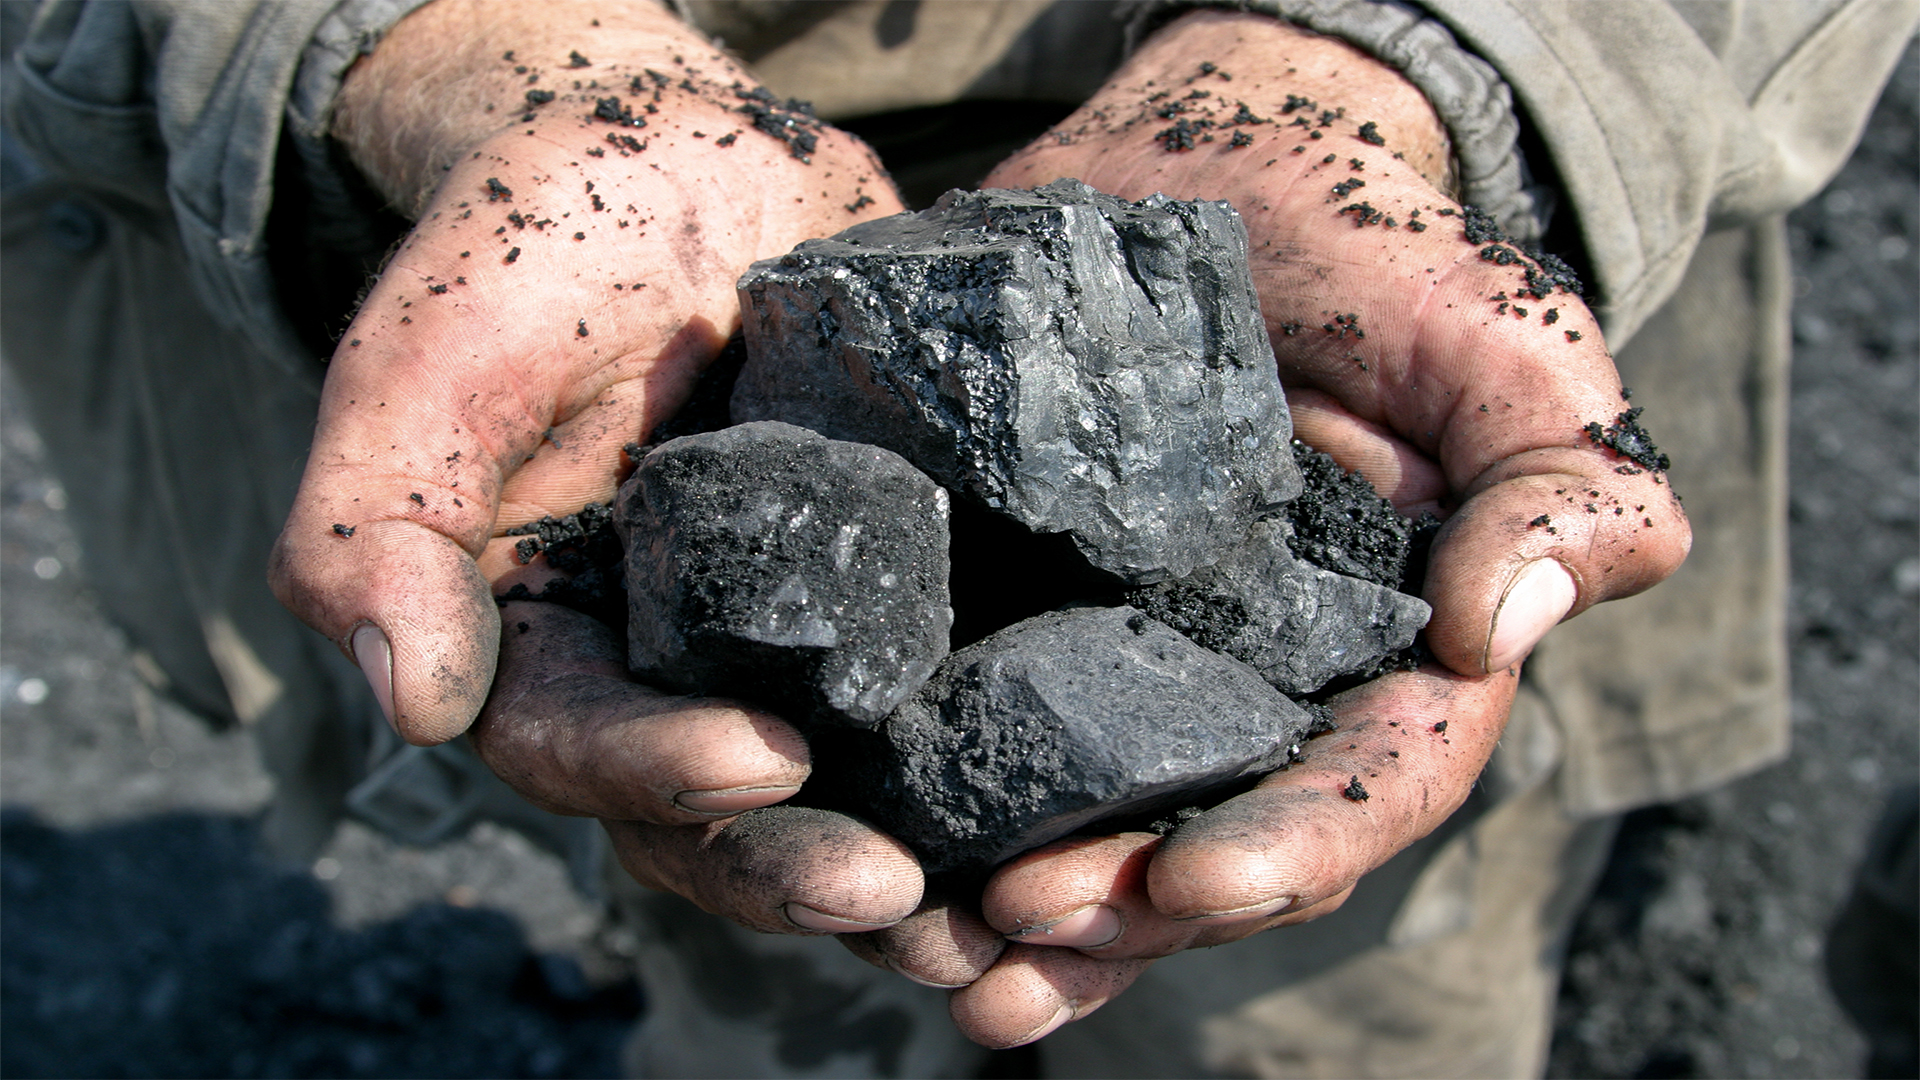 Coal in the hands of miner